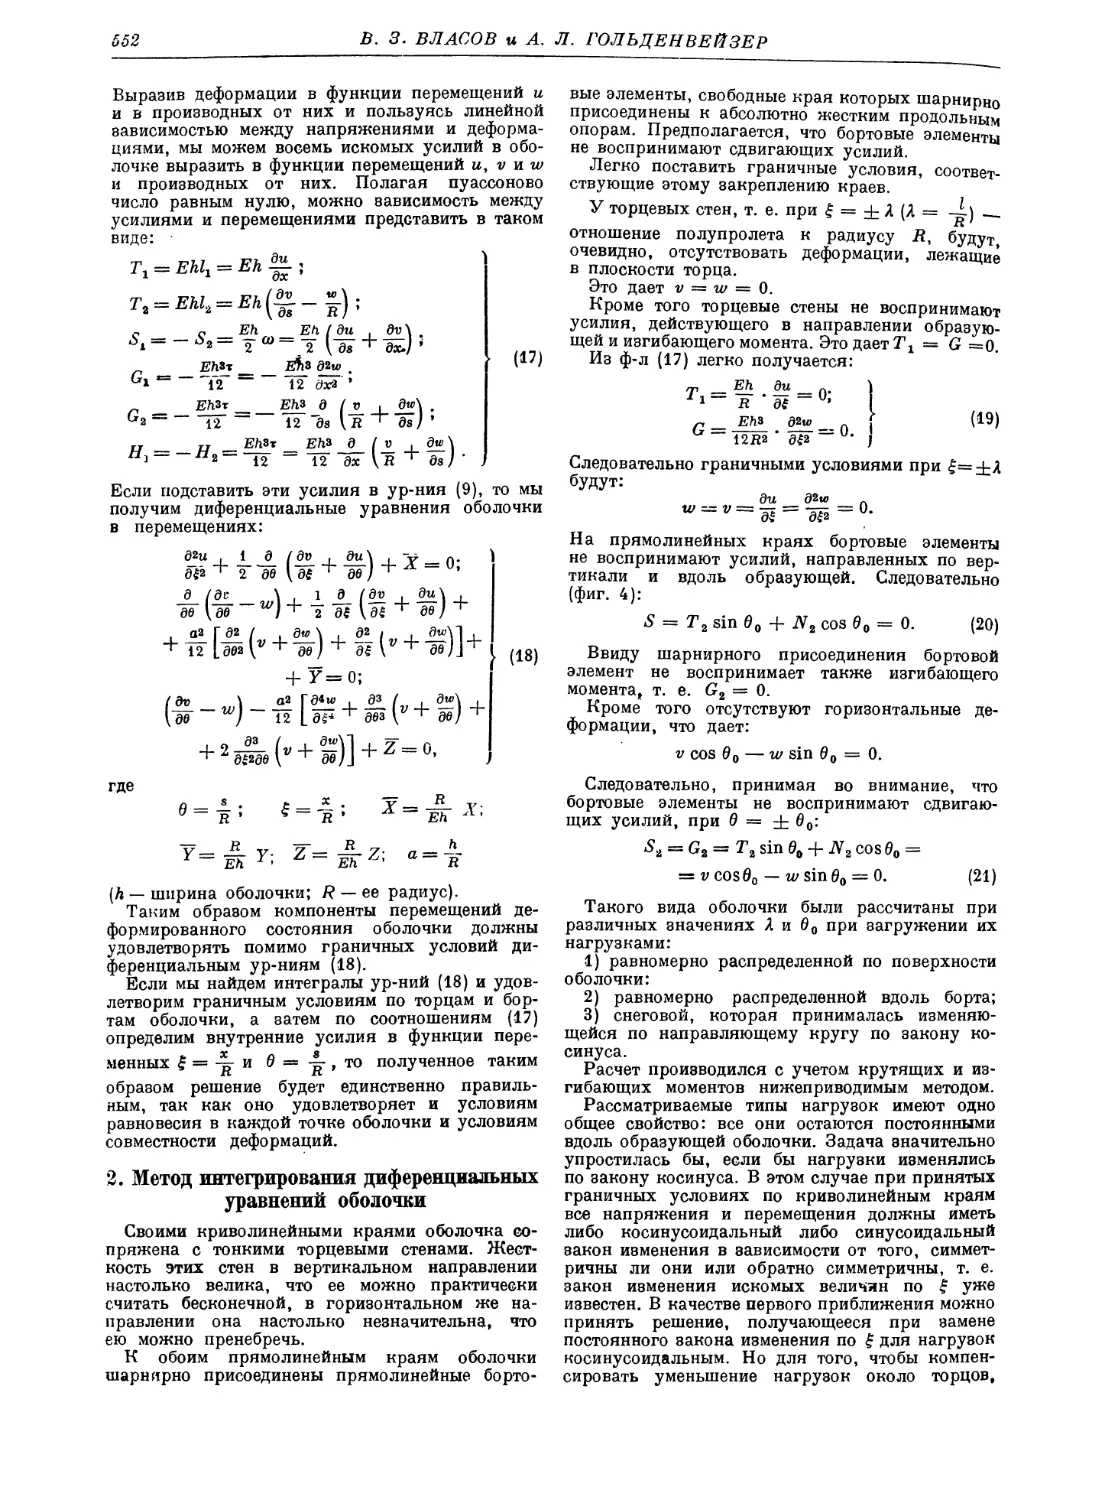 2. Метод интегрирования диференциальных уравнений оболочки